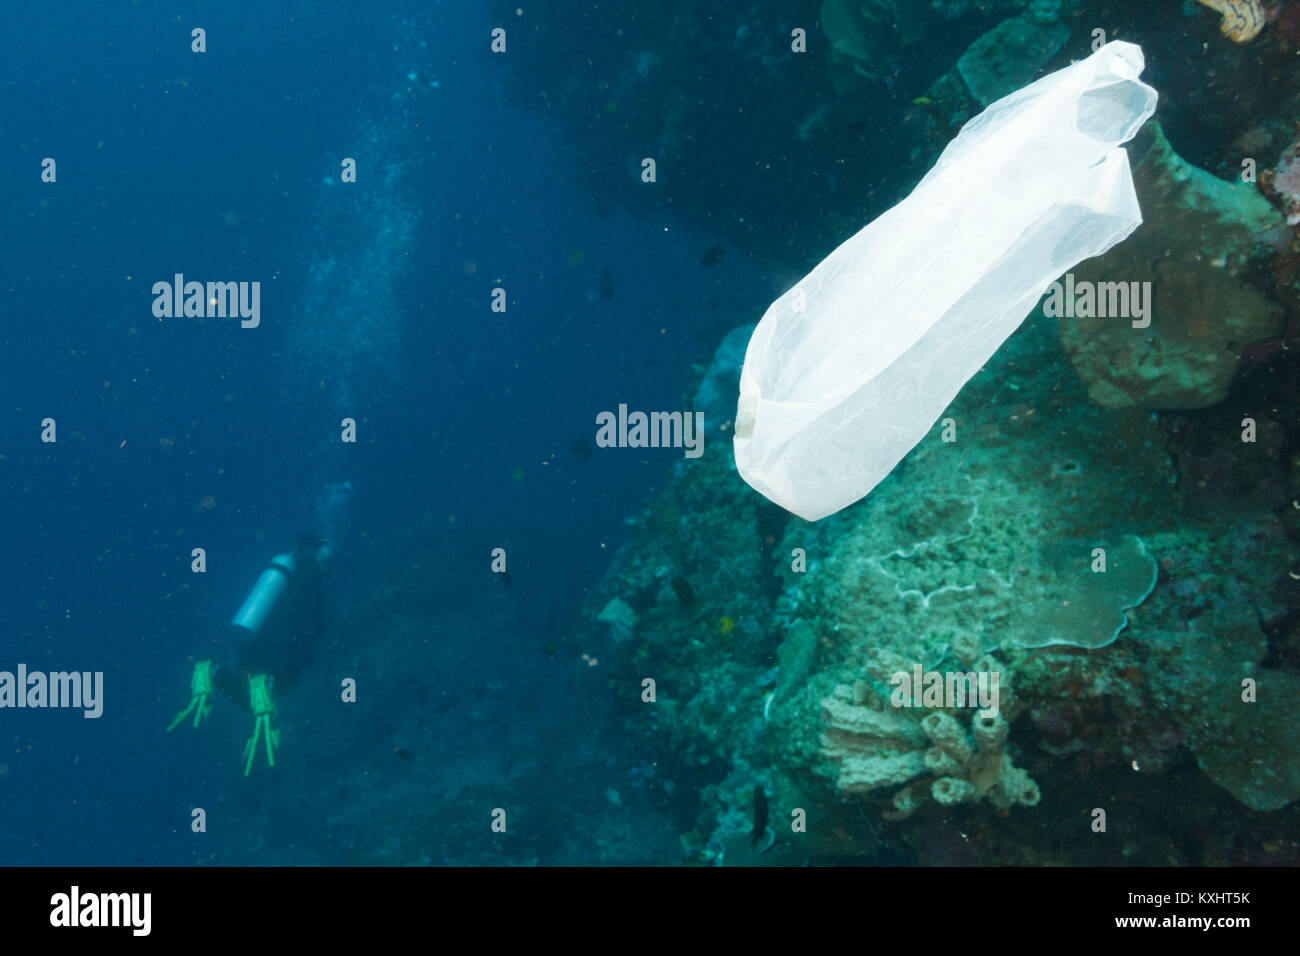 Eine Plastiktüte schwimmt im Meer nach verworfen, Bunaken National Marine Park, Nord Sulawesi, Indonesien Stockfoto